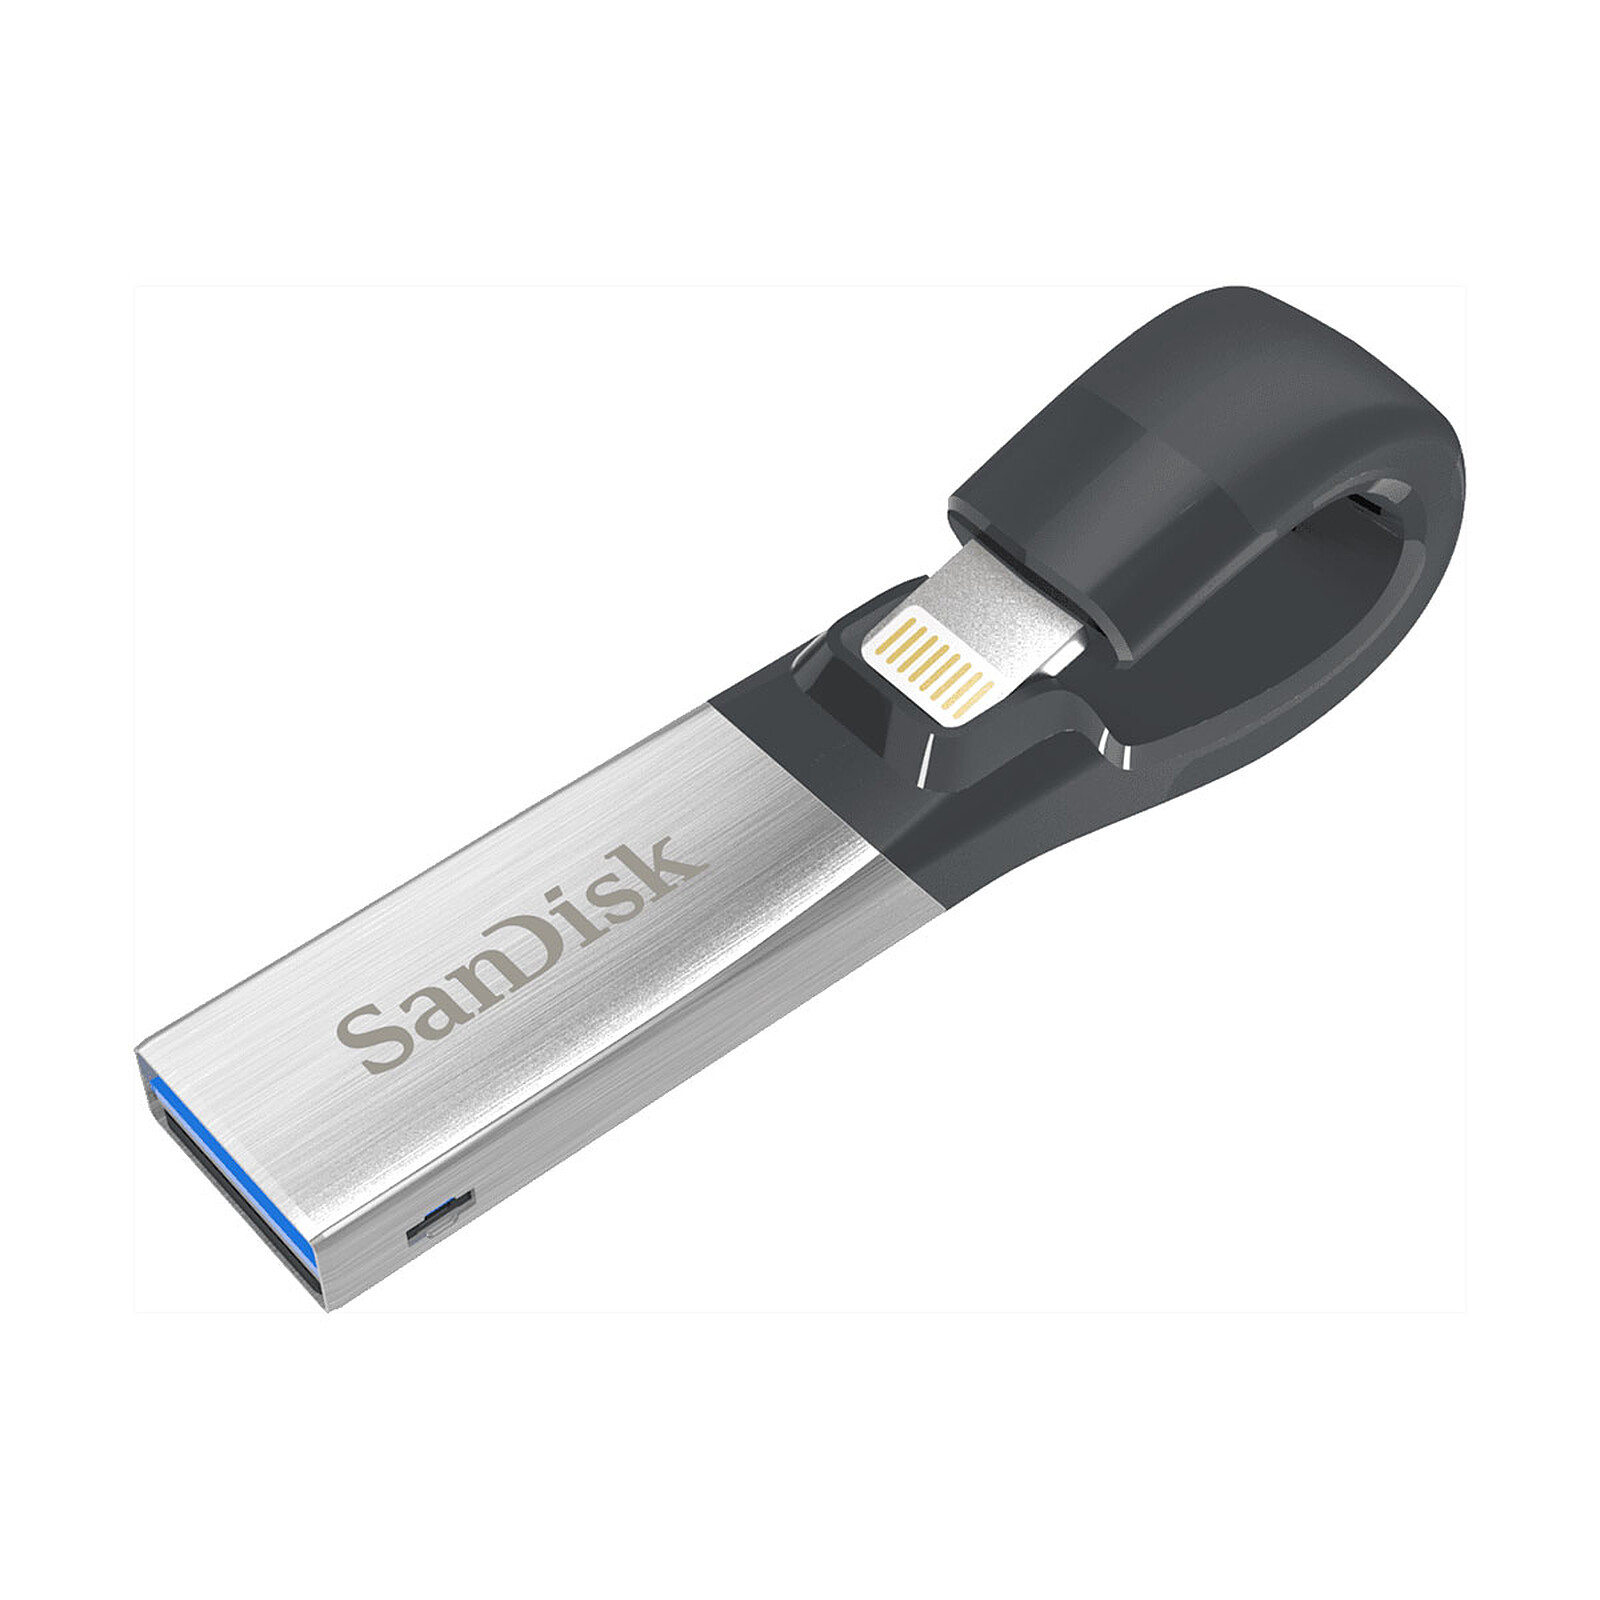 Sandisk iXpand 64 Go - Clé USB - Garantie 3 ans LDLC